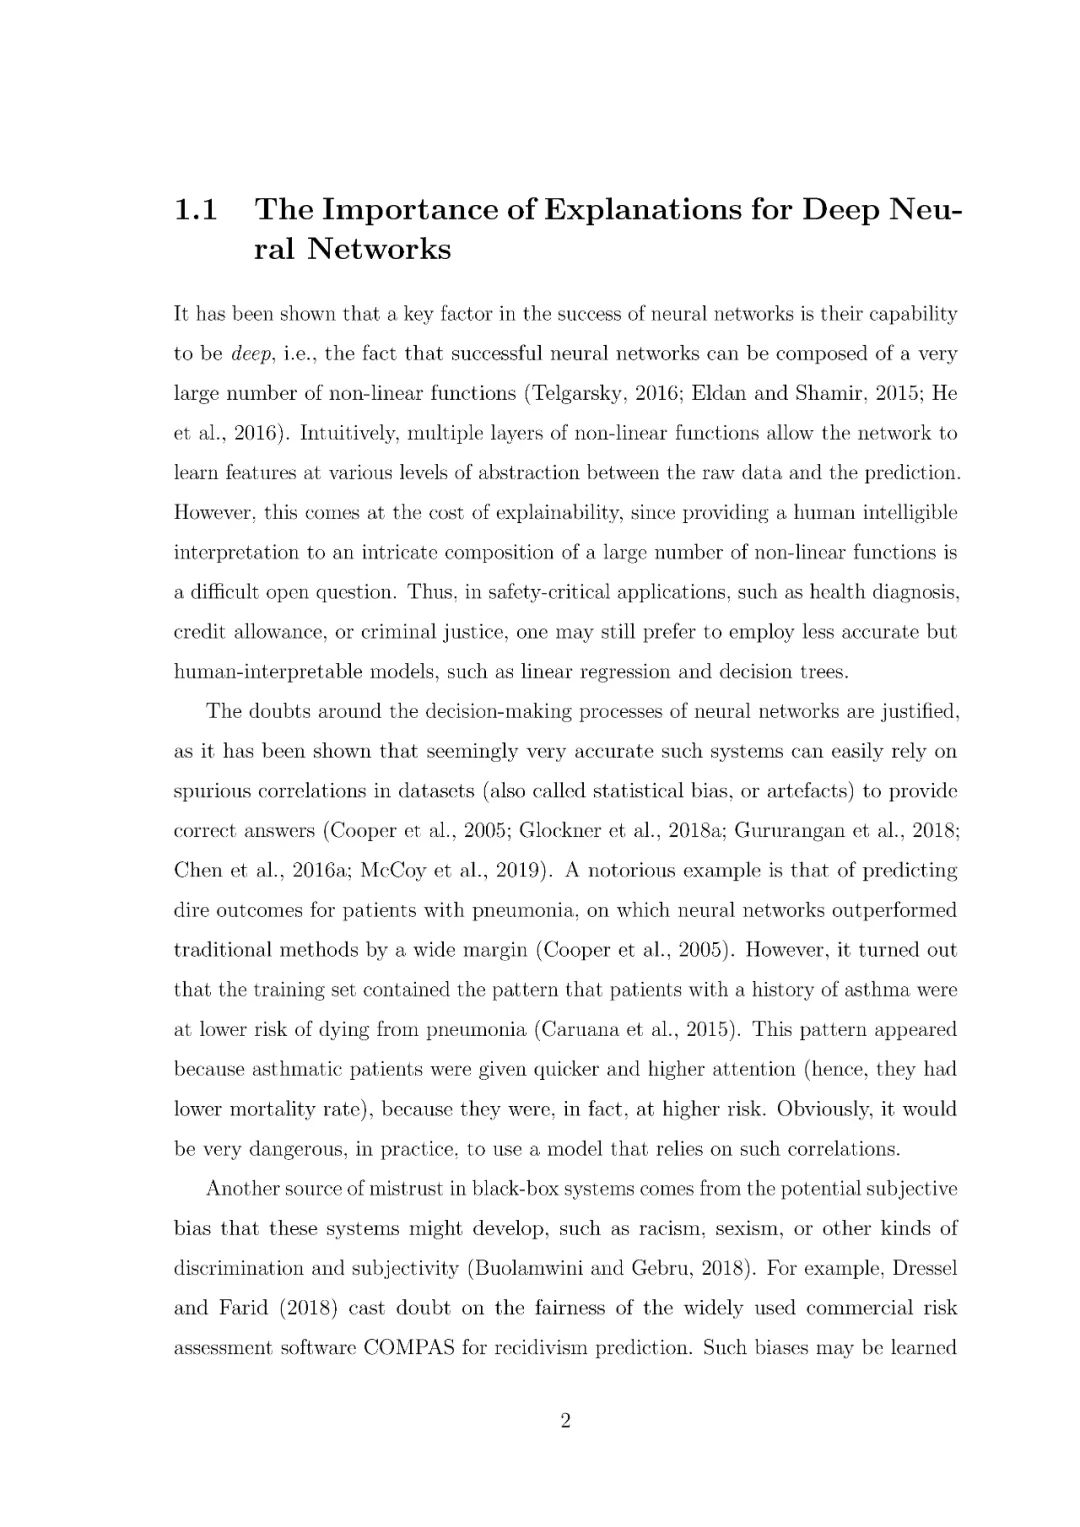 【牛津大学博士论文】解释深度神经网络，134页pdf阐述打开深度学习黑盒性